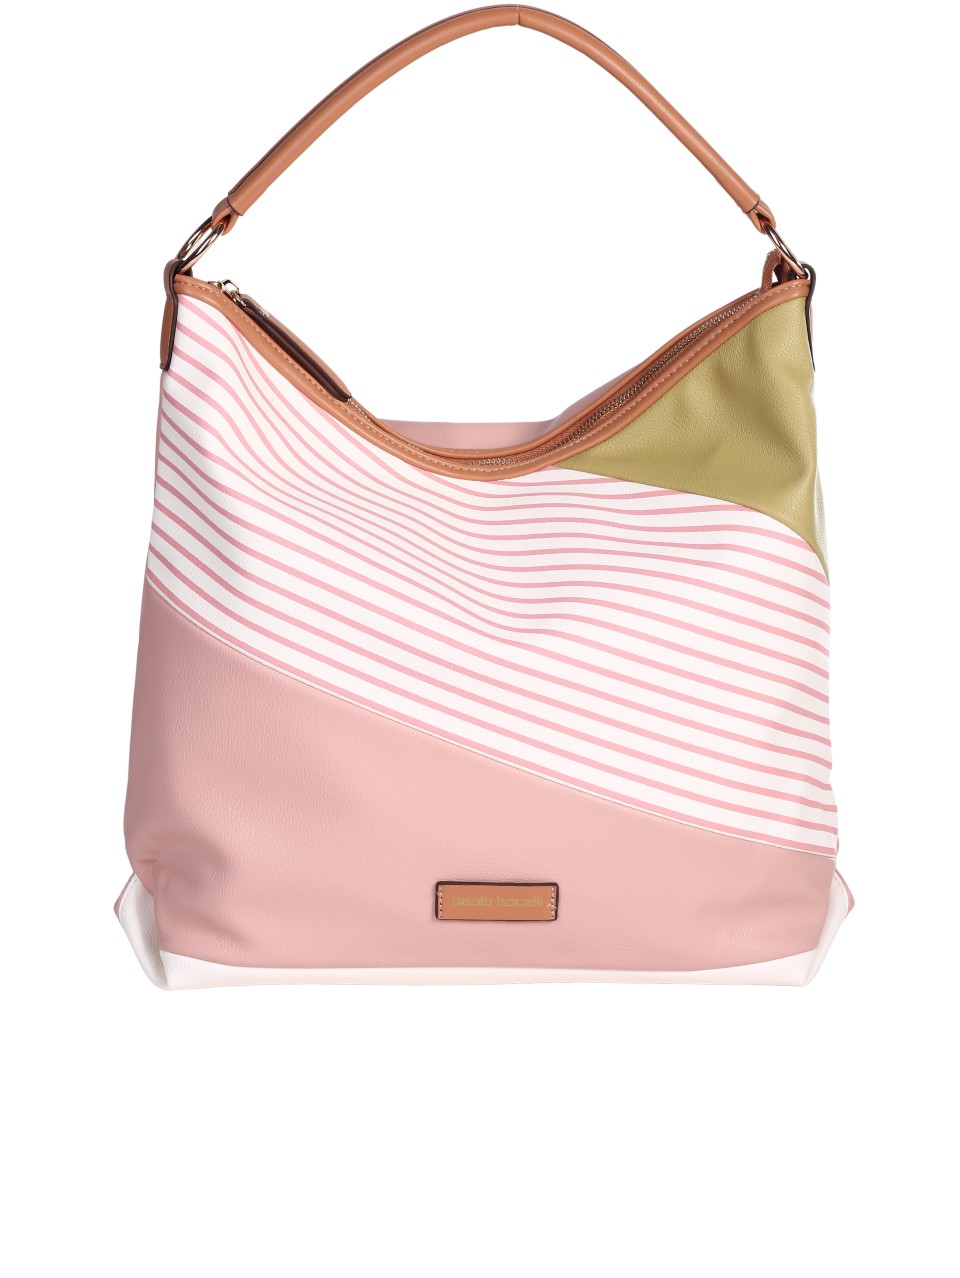 Ежедневна дамска чанта в розово/зелен цвят 9Q-24263 pink